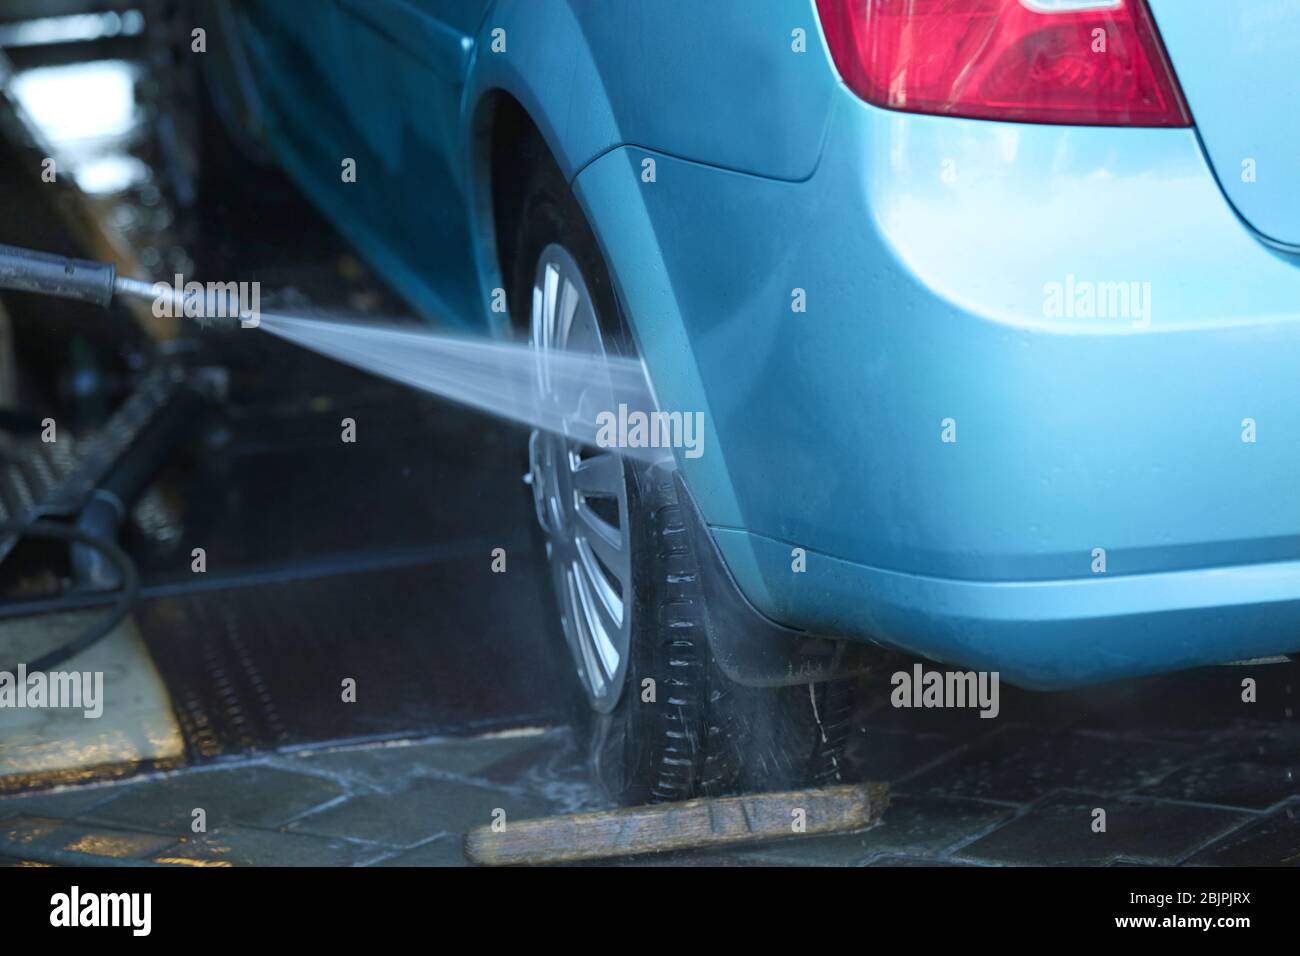 Automobile nettoyage avec de l'eau à haute pression lavage de voiture Banque D'Images